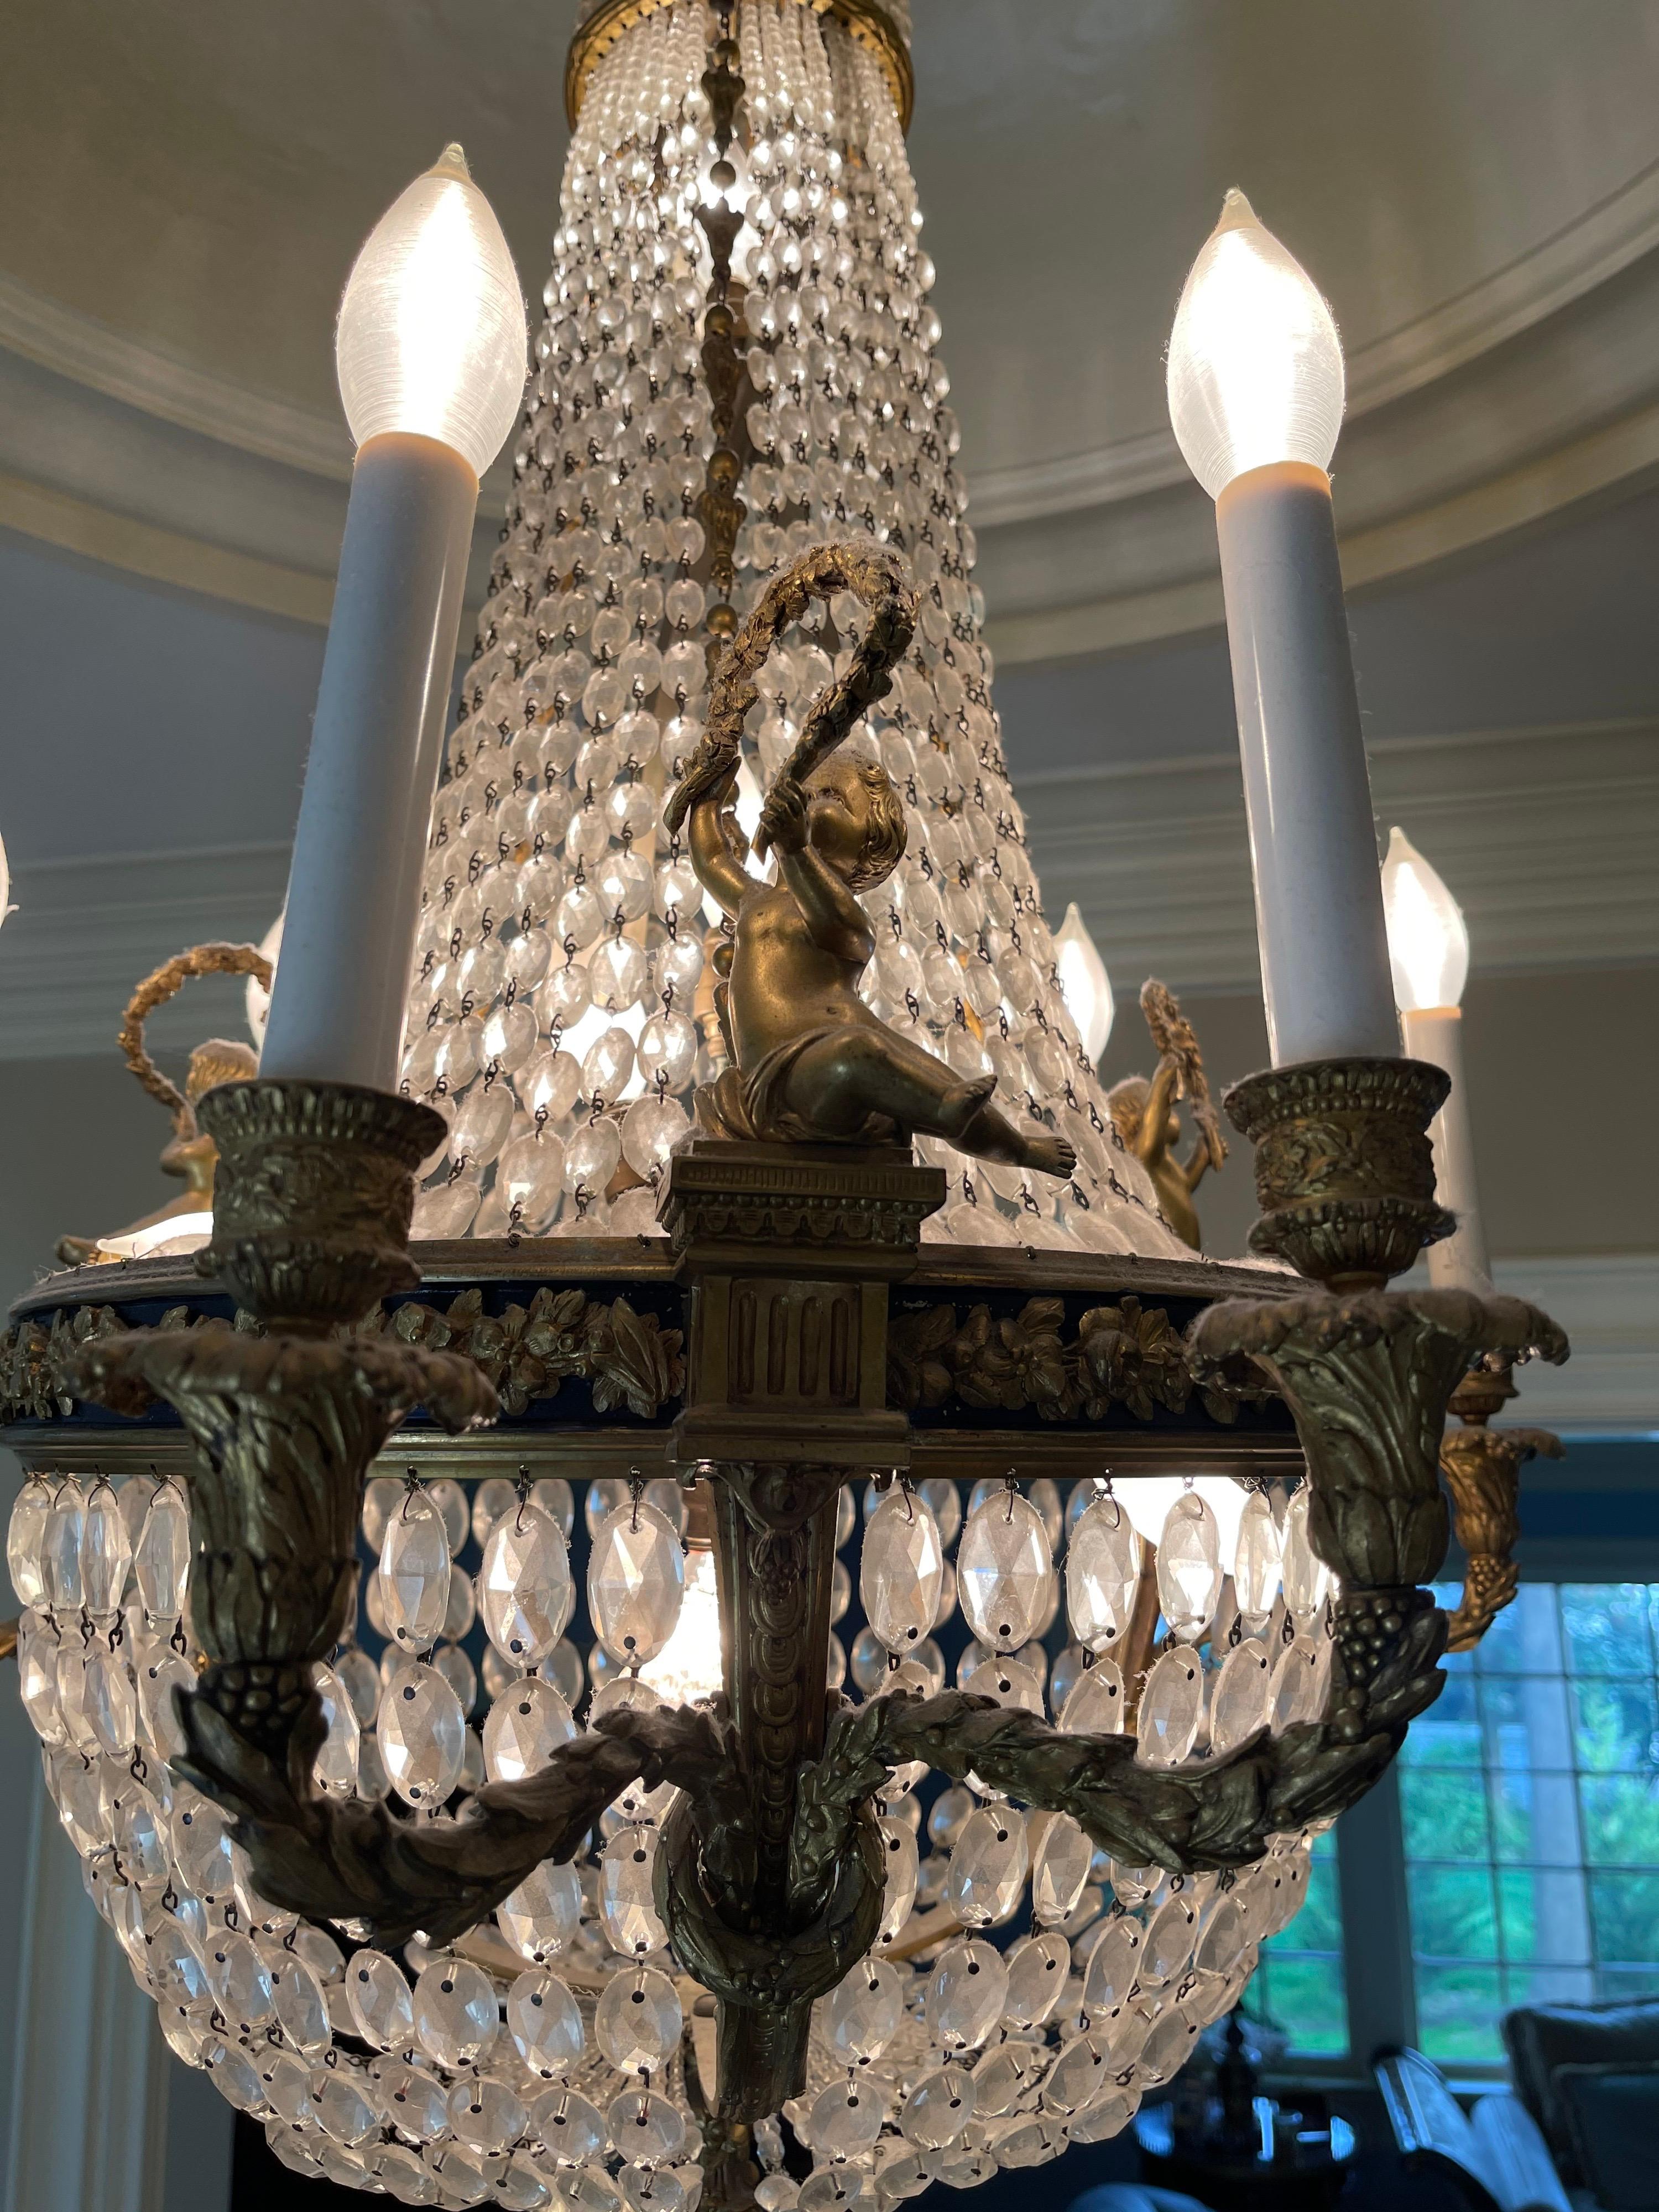 Magnifique lustre à panier en bronze doré, patiné et cristal gradué avec des chérubins / putti tenant chacun une guirlande à la manière de Louis XVI. Le lustre a 6 candélabres à branches à l'extérieur et 7 à l'intérieur.